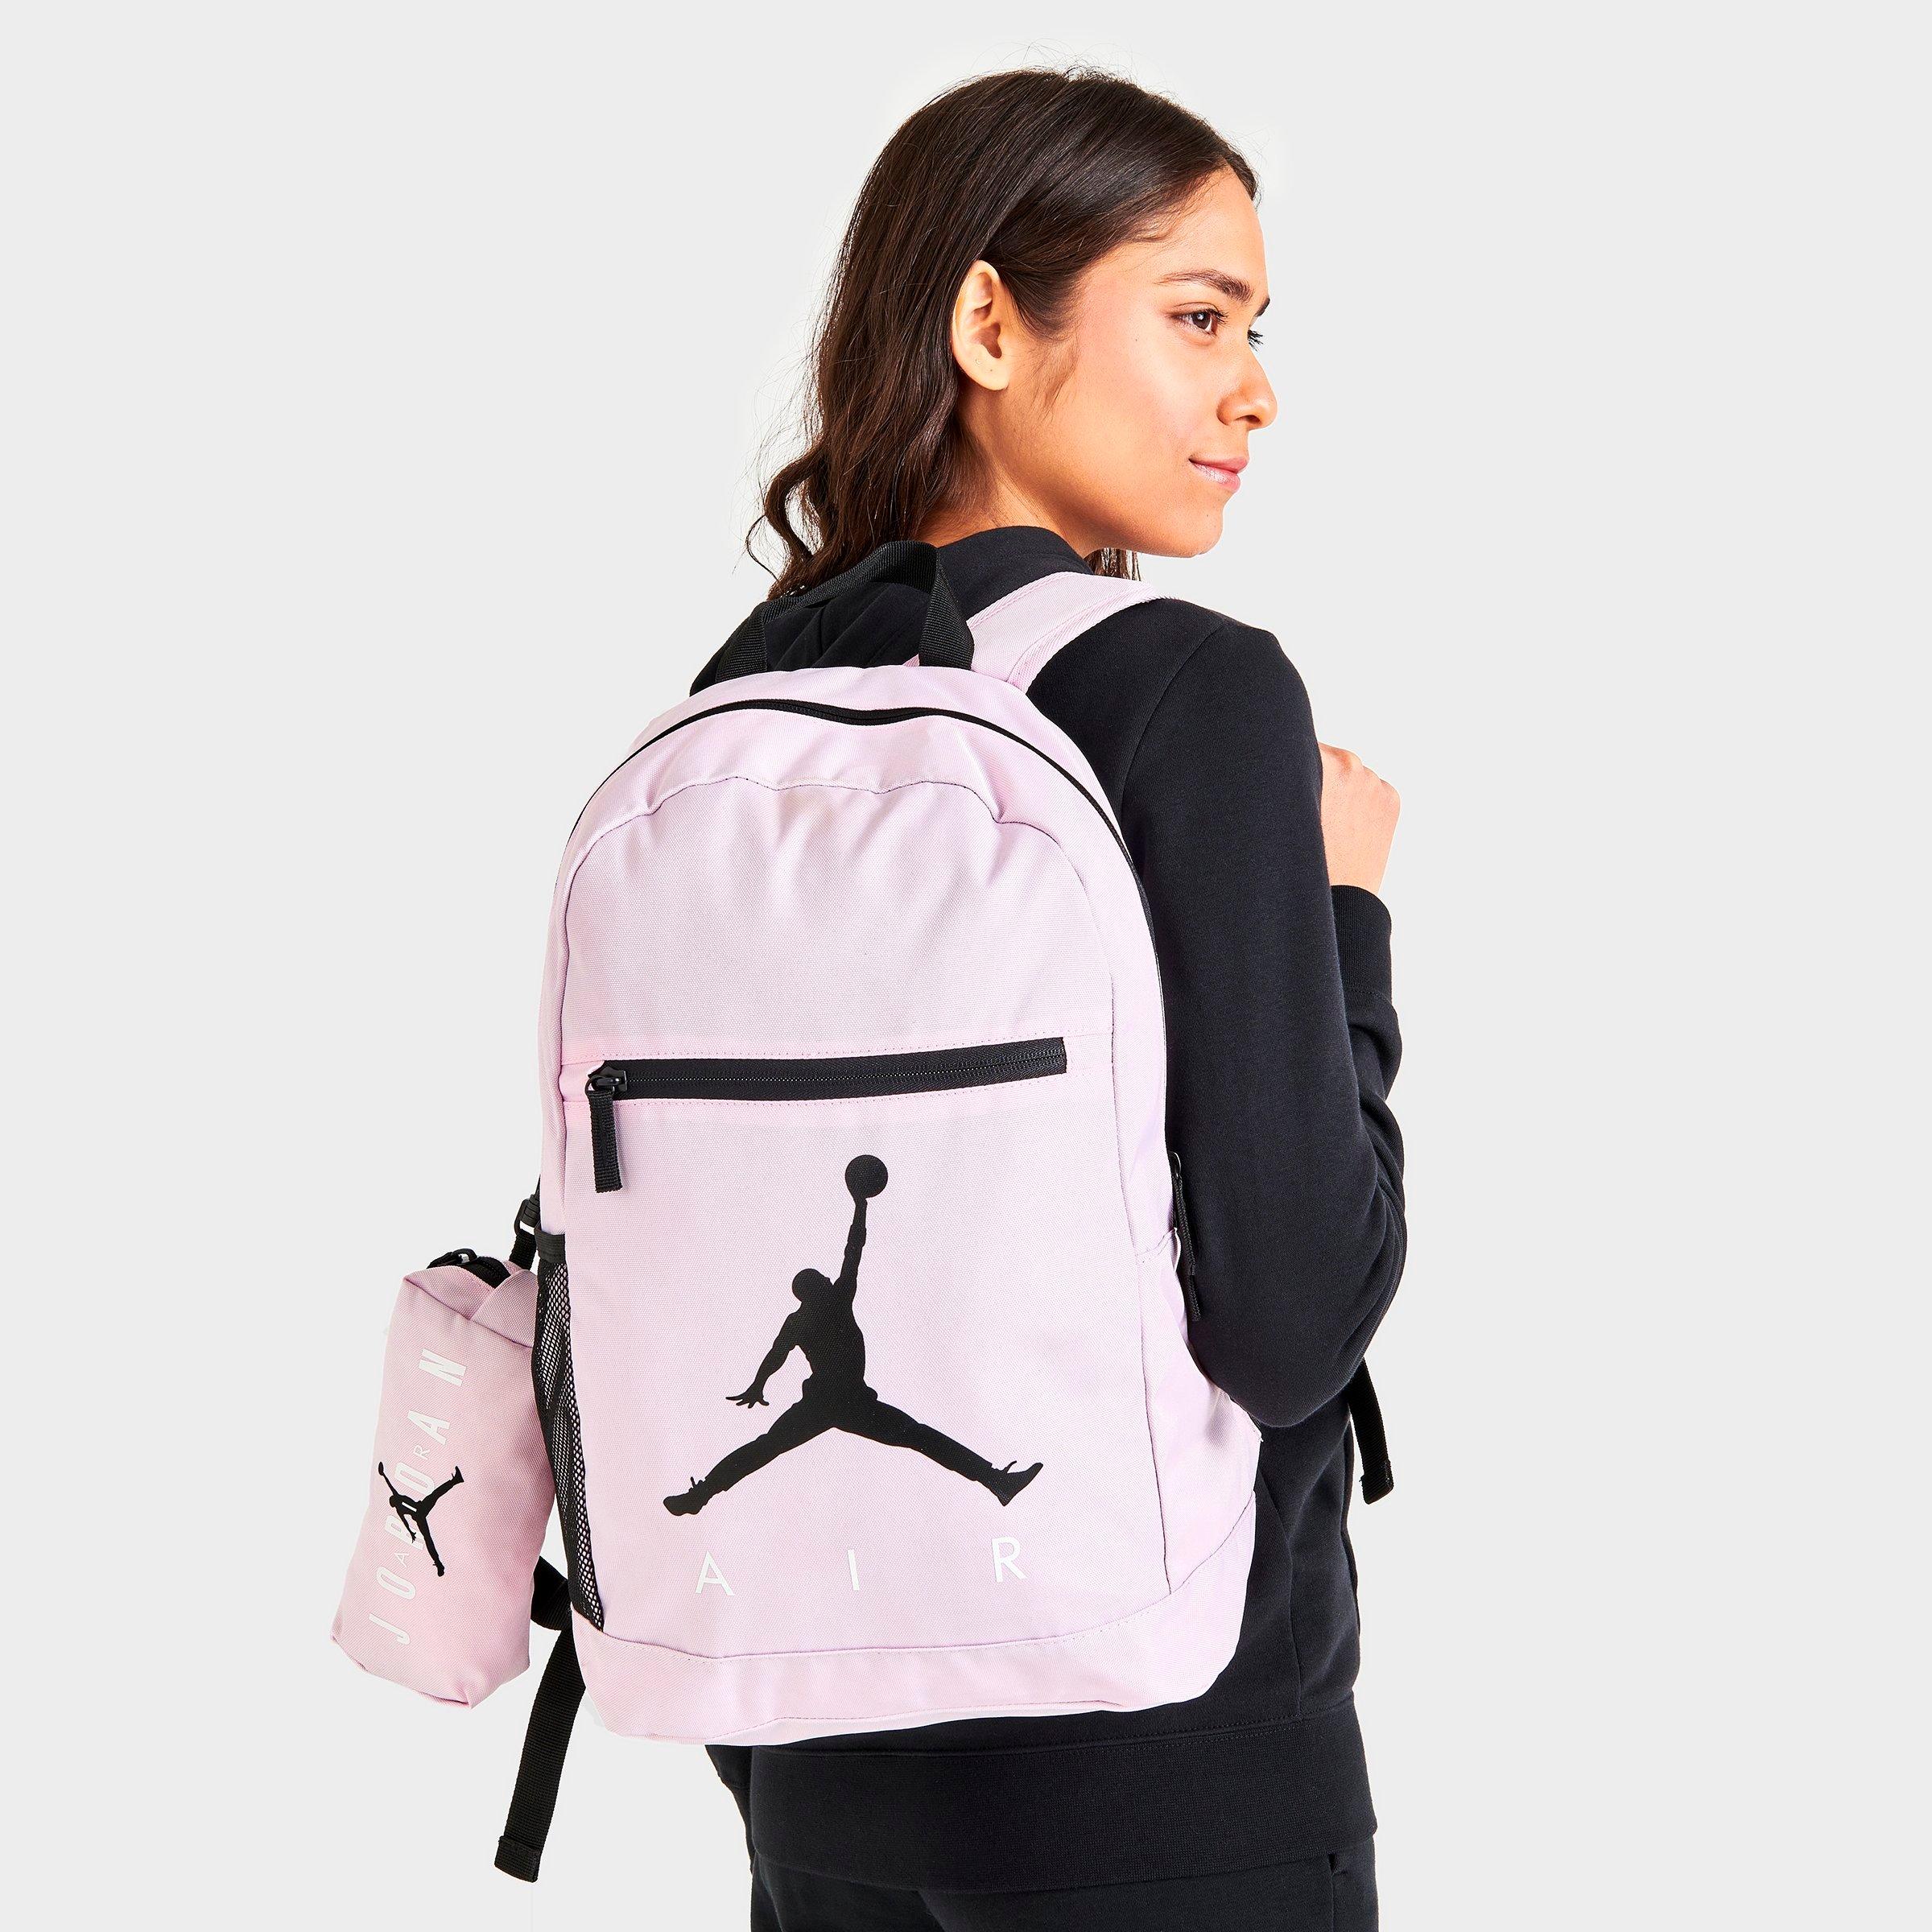 jordans backpack